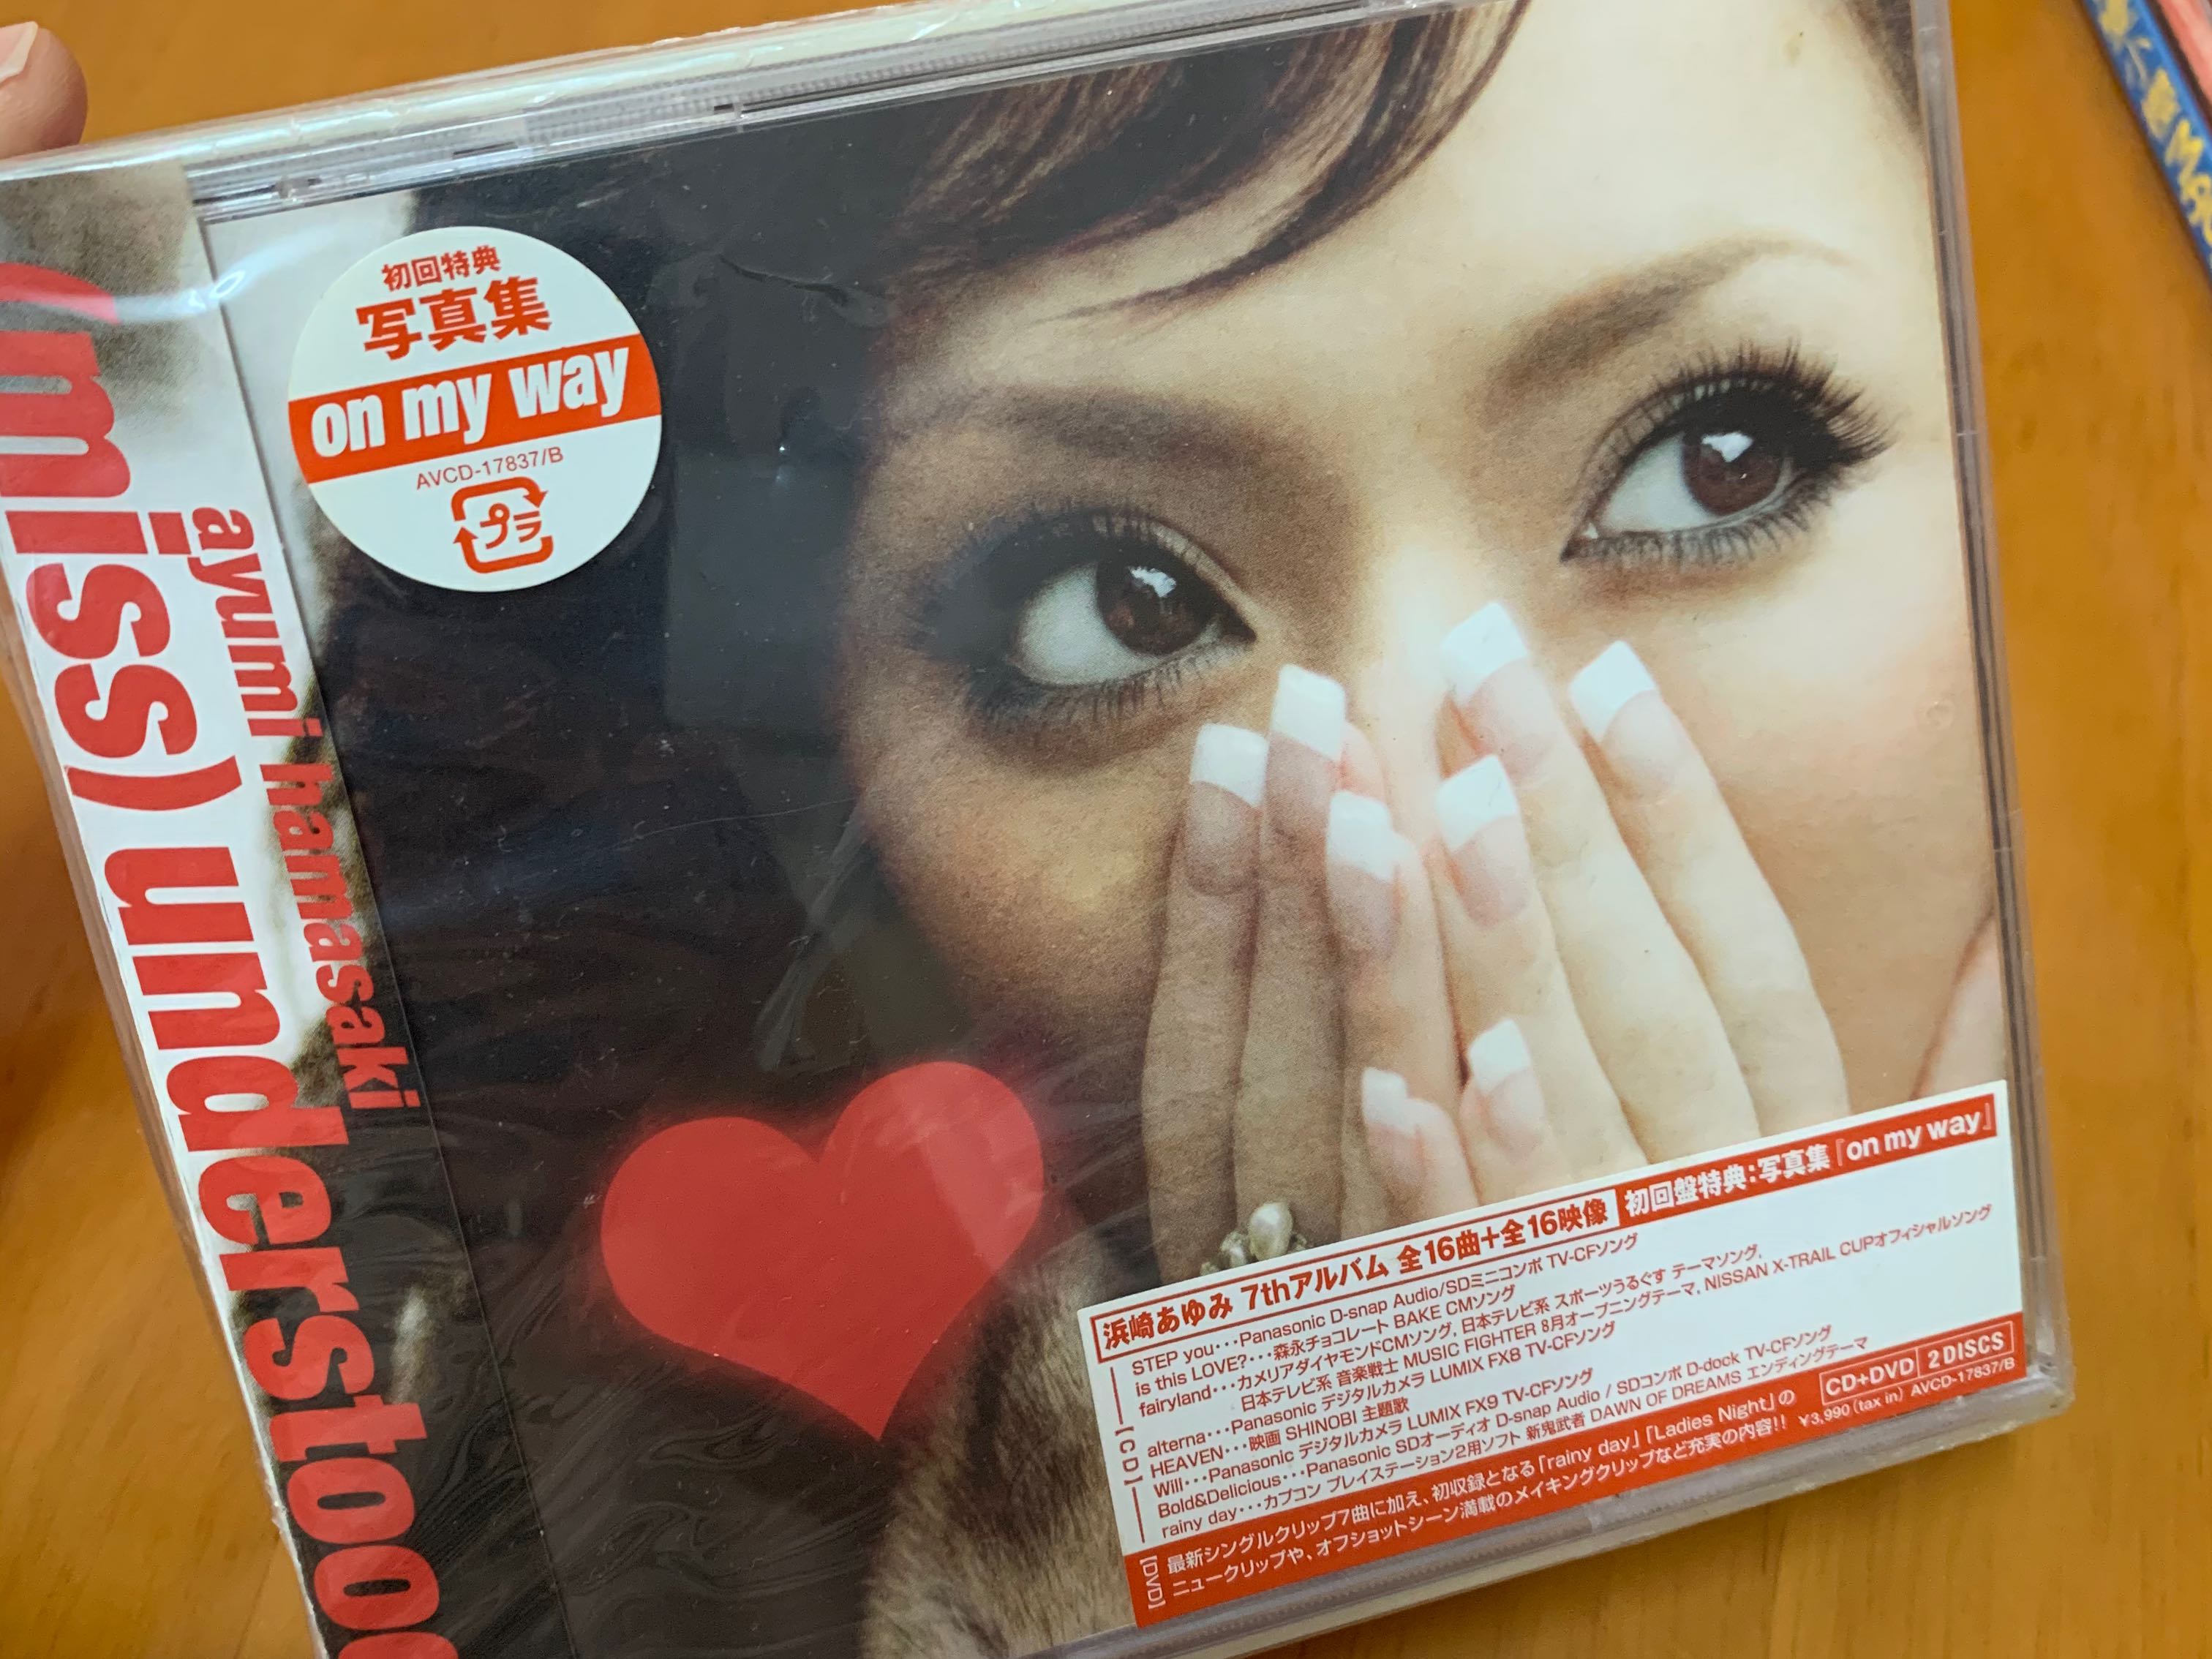 日版cd Dvd 濱崎步ayumi Hamasaki Miss Understood 興趣及遊戲 收藏品及紀念品 明星周邊 Carousell